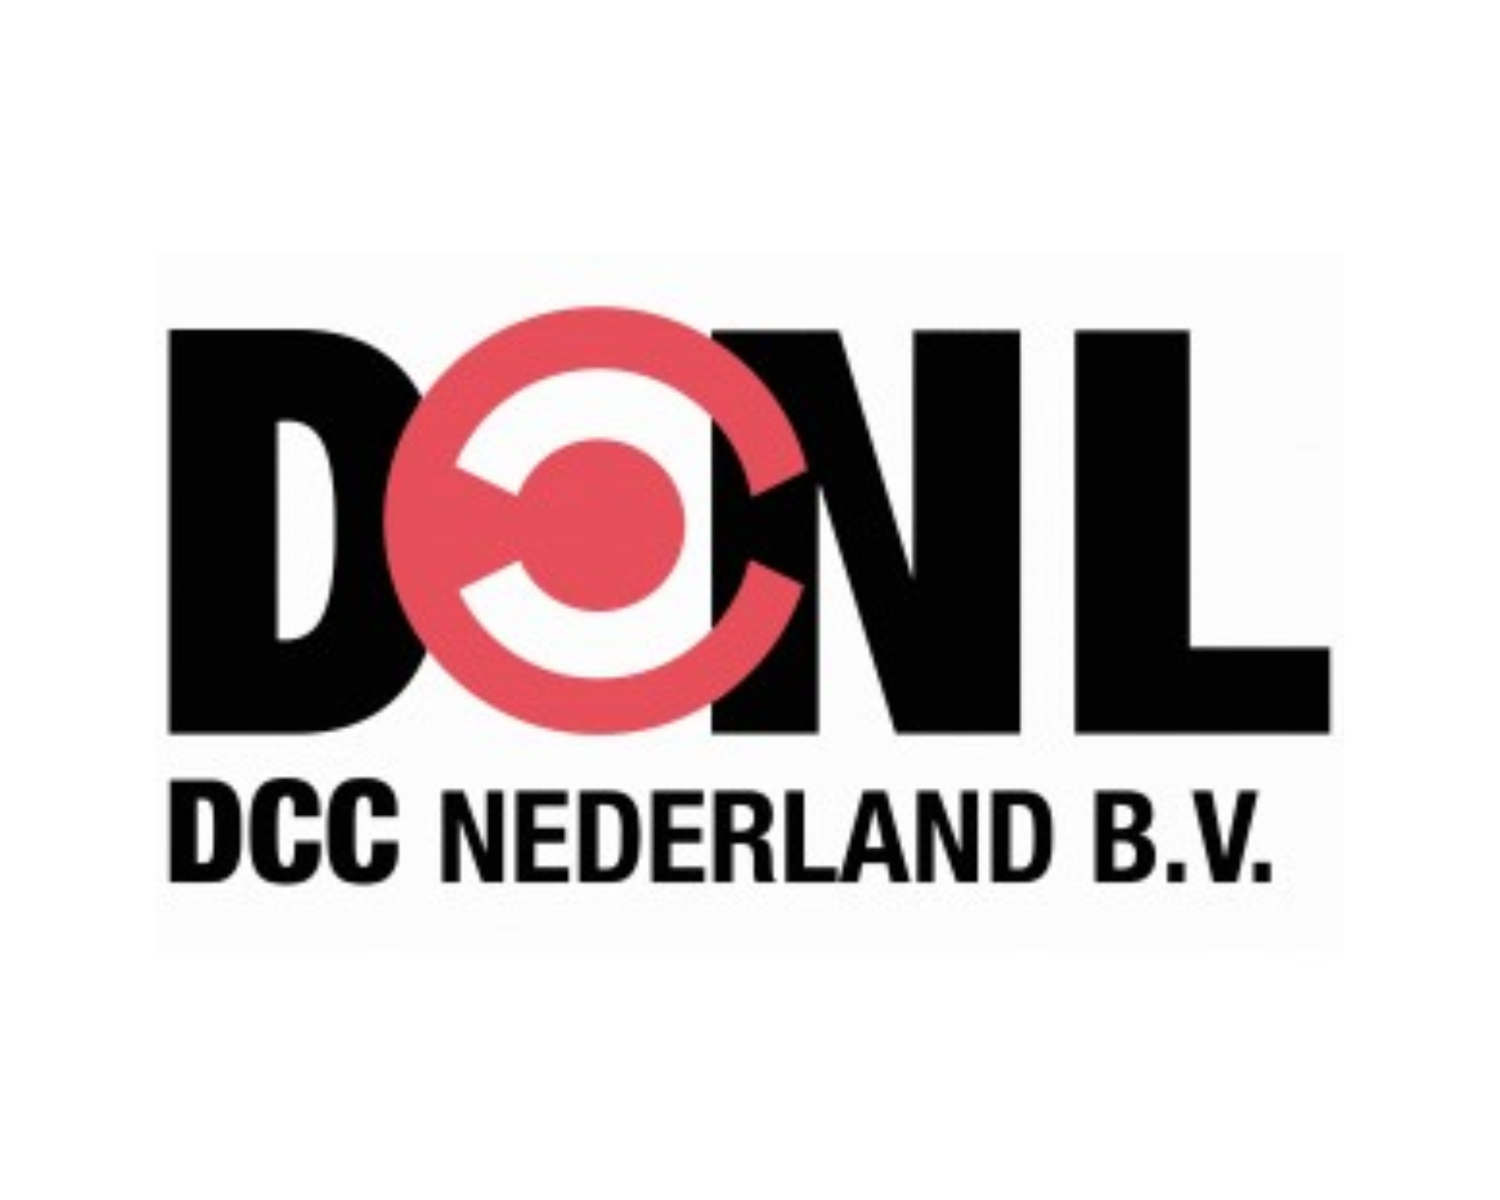 DCC Nederland BV